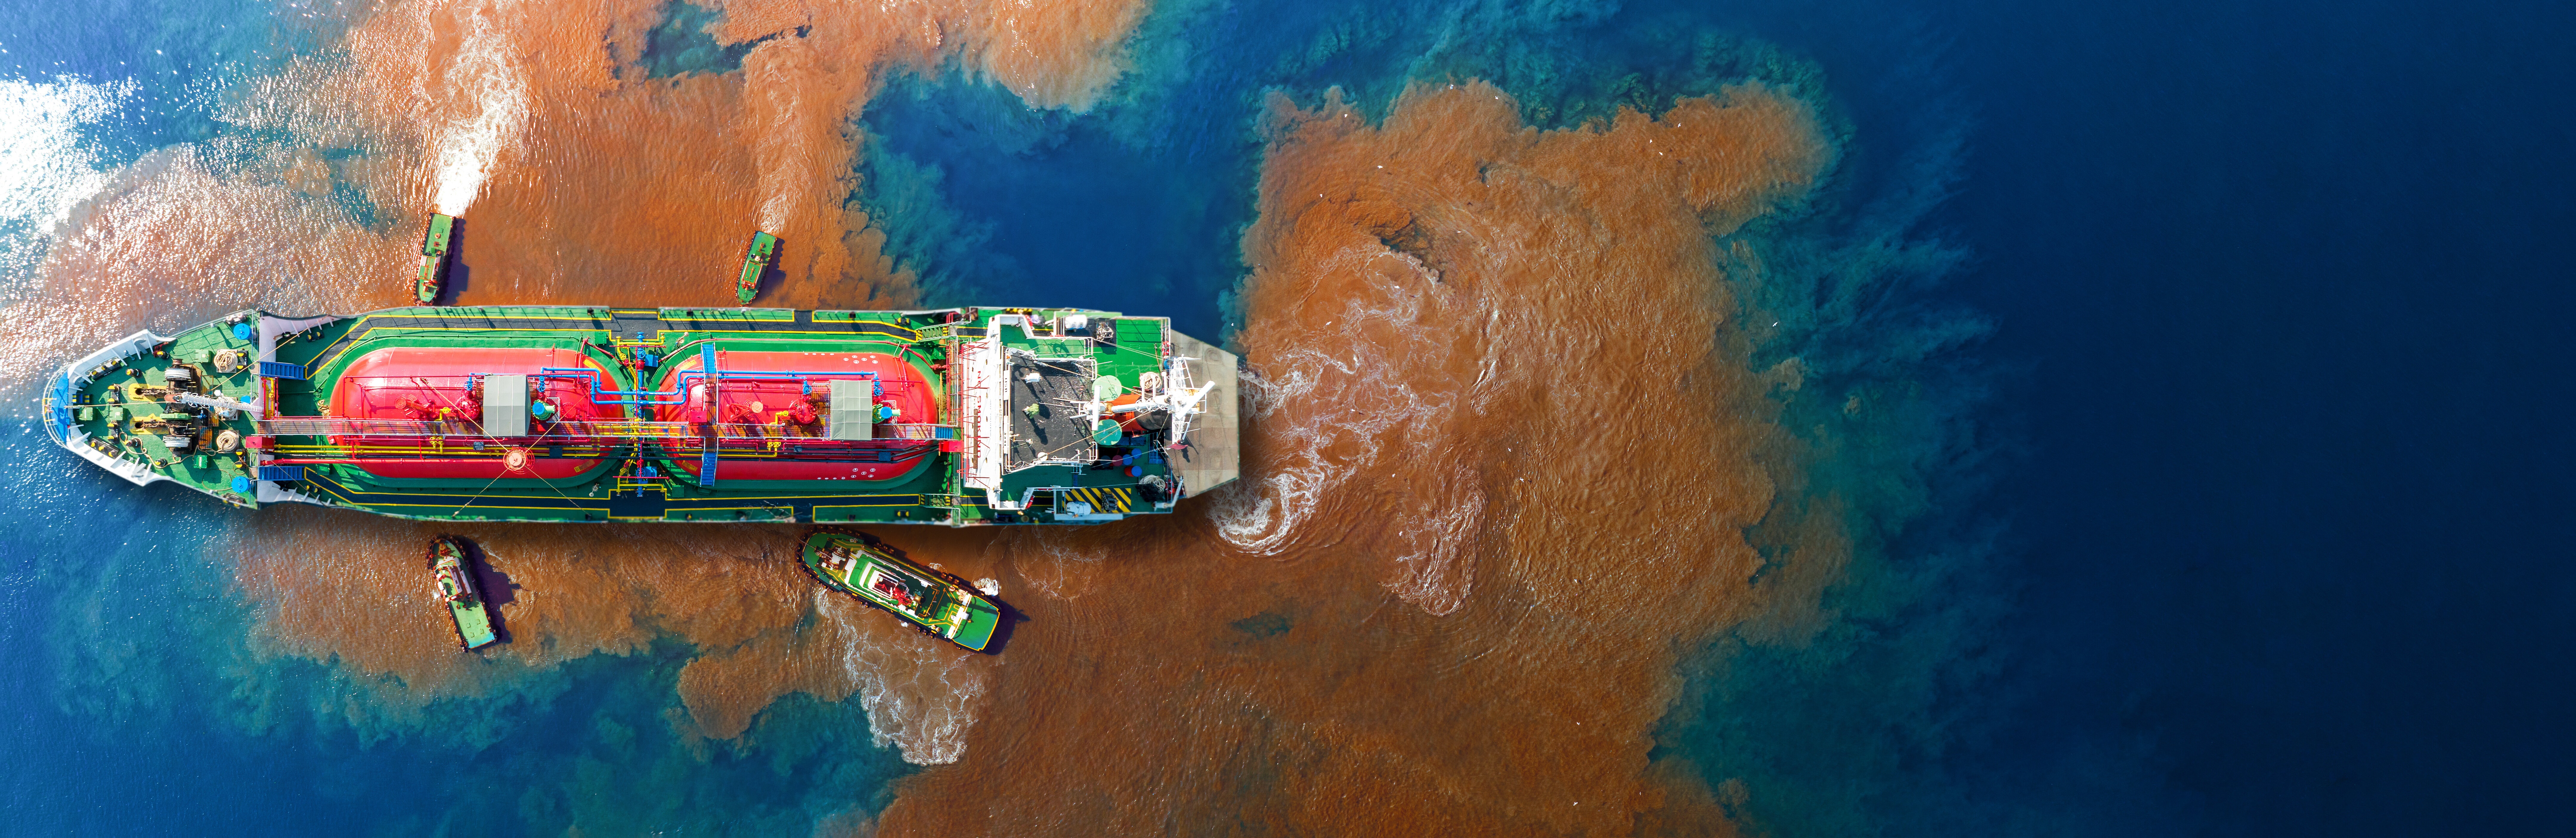 L'activité humaine dégrade les océans, ici par des déversements d'hydrocarbures. © GreenOak, Adobe Stock